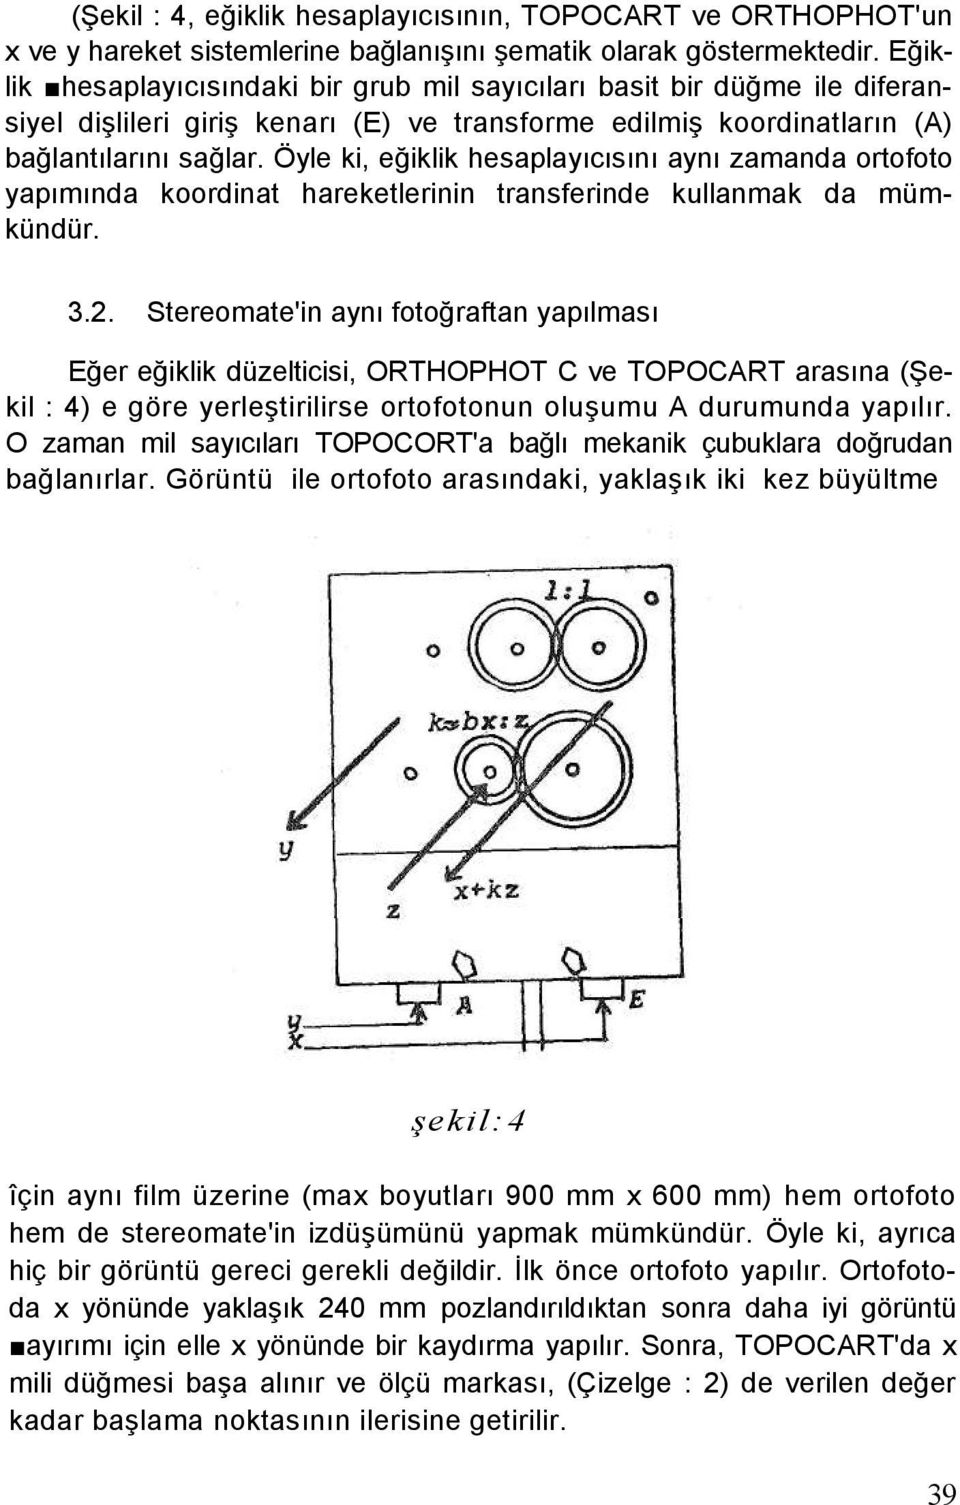 Öyle ki, eğiklik hesaplayıcısını aynı zamanda ortofoto yapımında koordinat hareketlerinin transferinde kullanmak da mümkündür. 3.2.